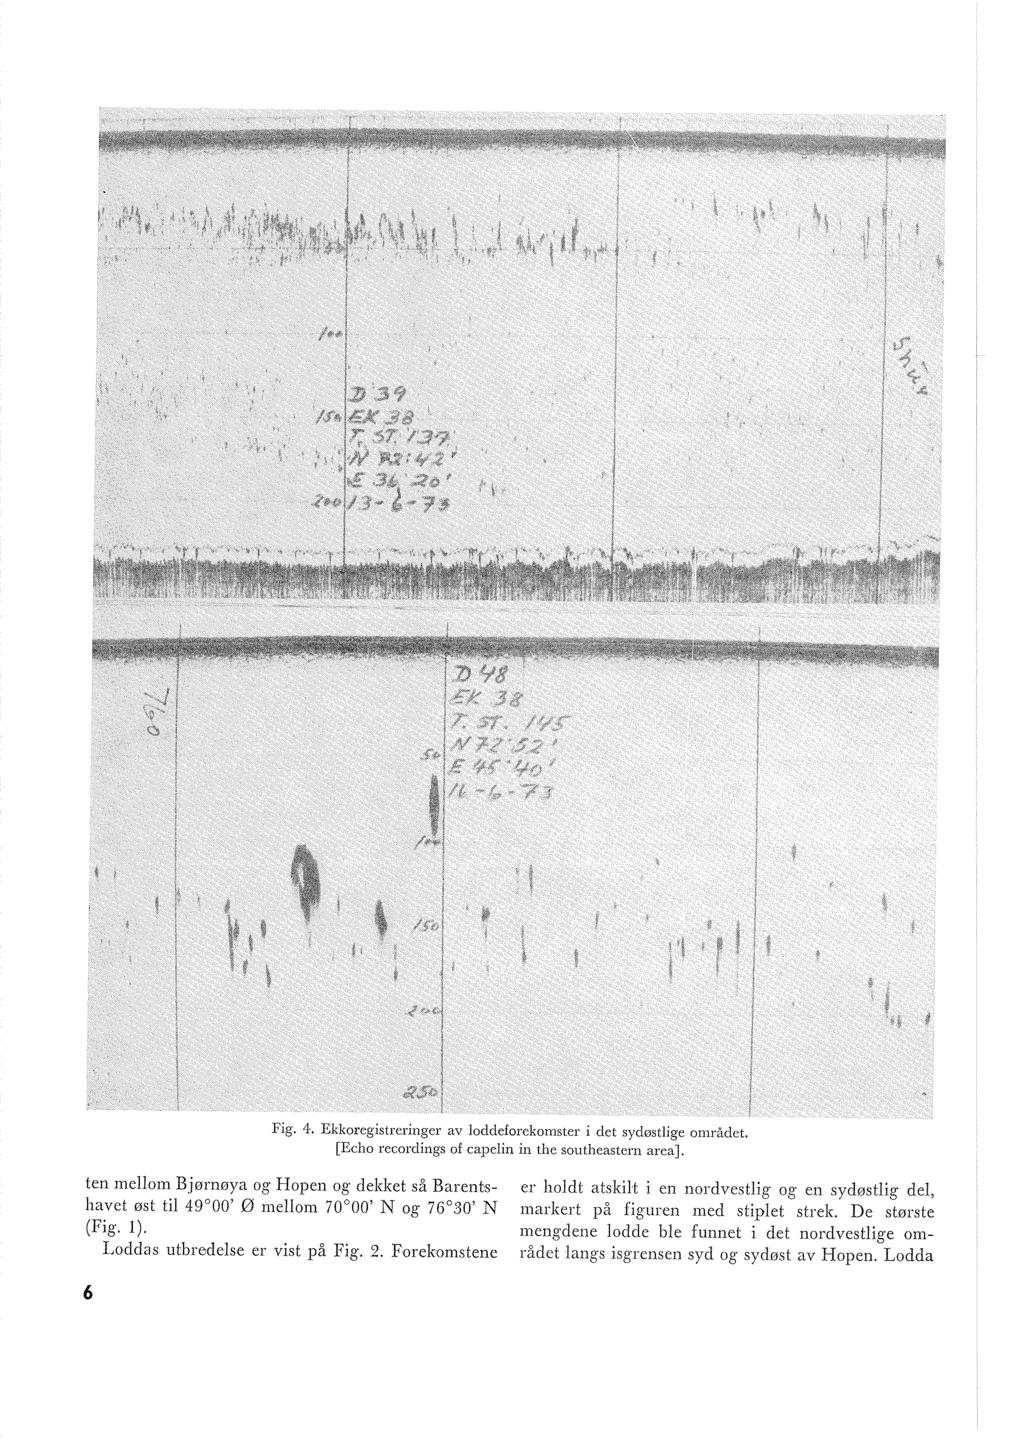 Fig. 4. Ekkoregisireringer av oddeforekomster i det sydøstige området. [Echo recordings of capein in the southeastern area].